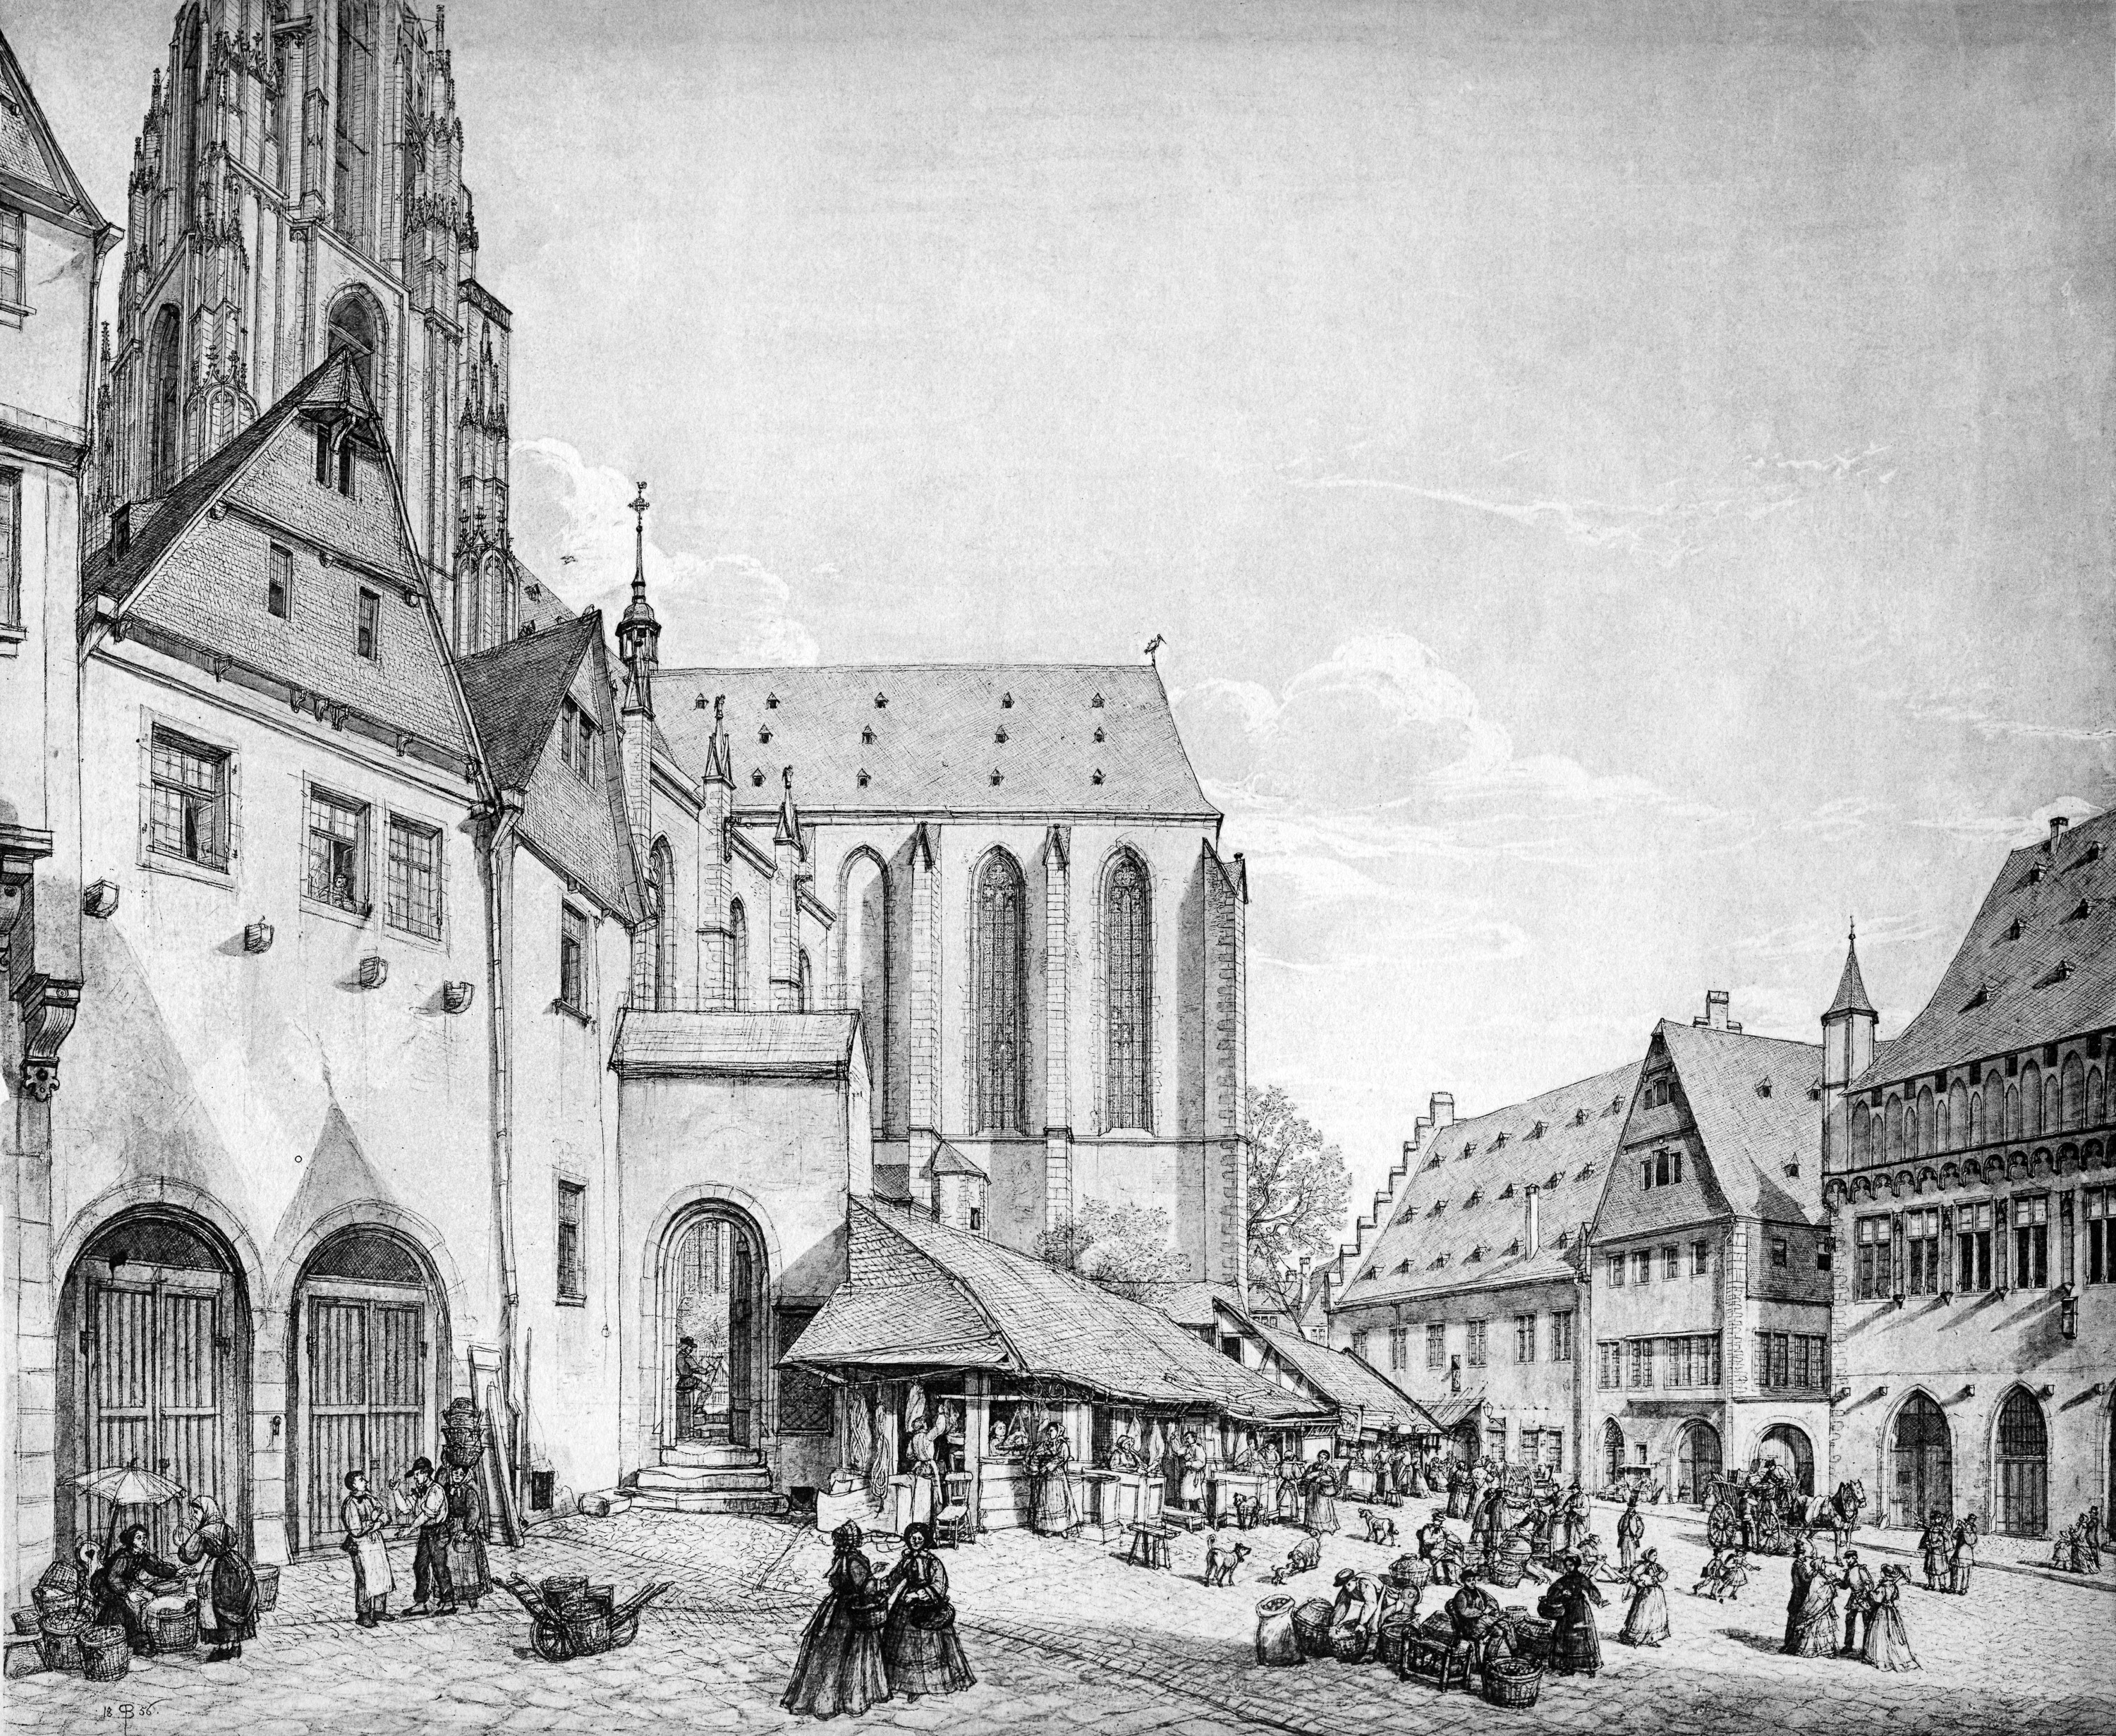 Frankfurt Am Main-Peter Becker-BAAF-028-Der Weckmarkt-1856